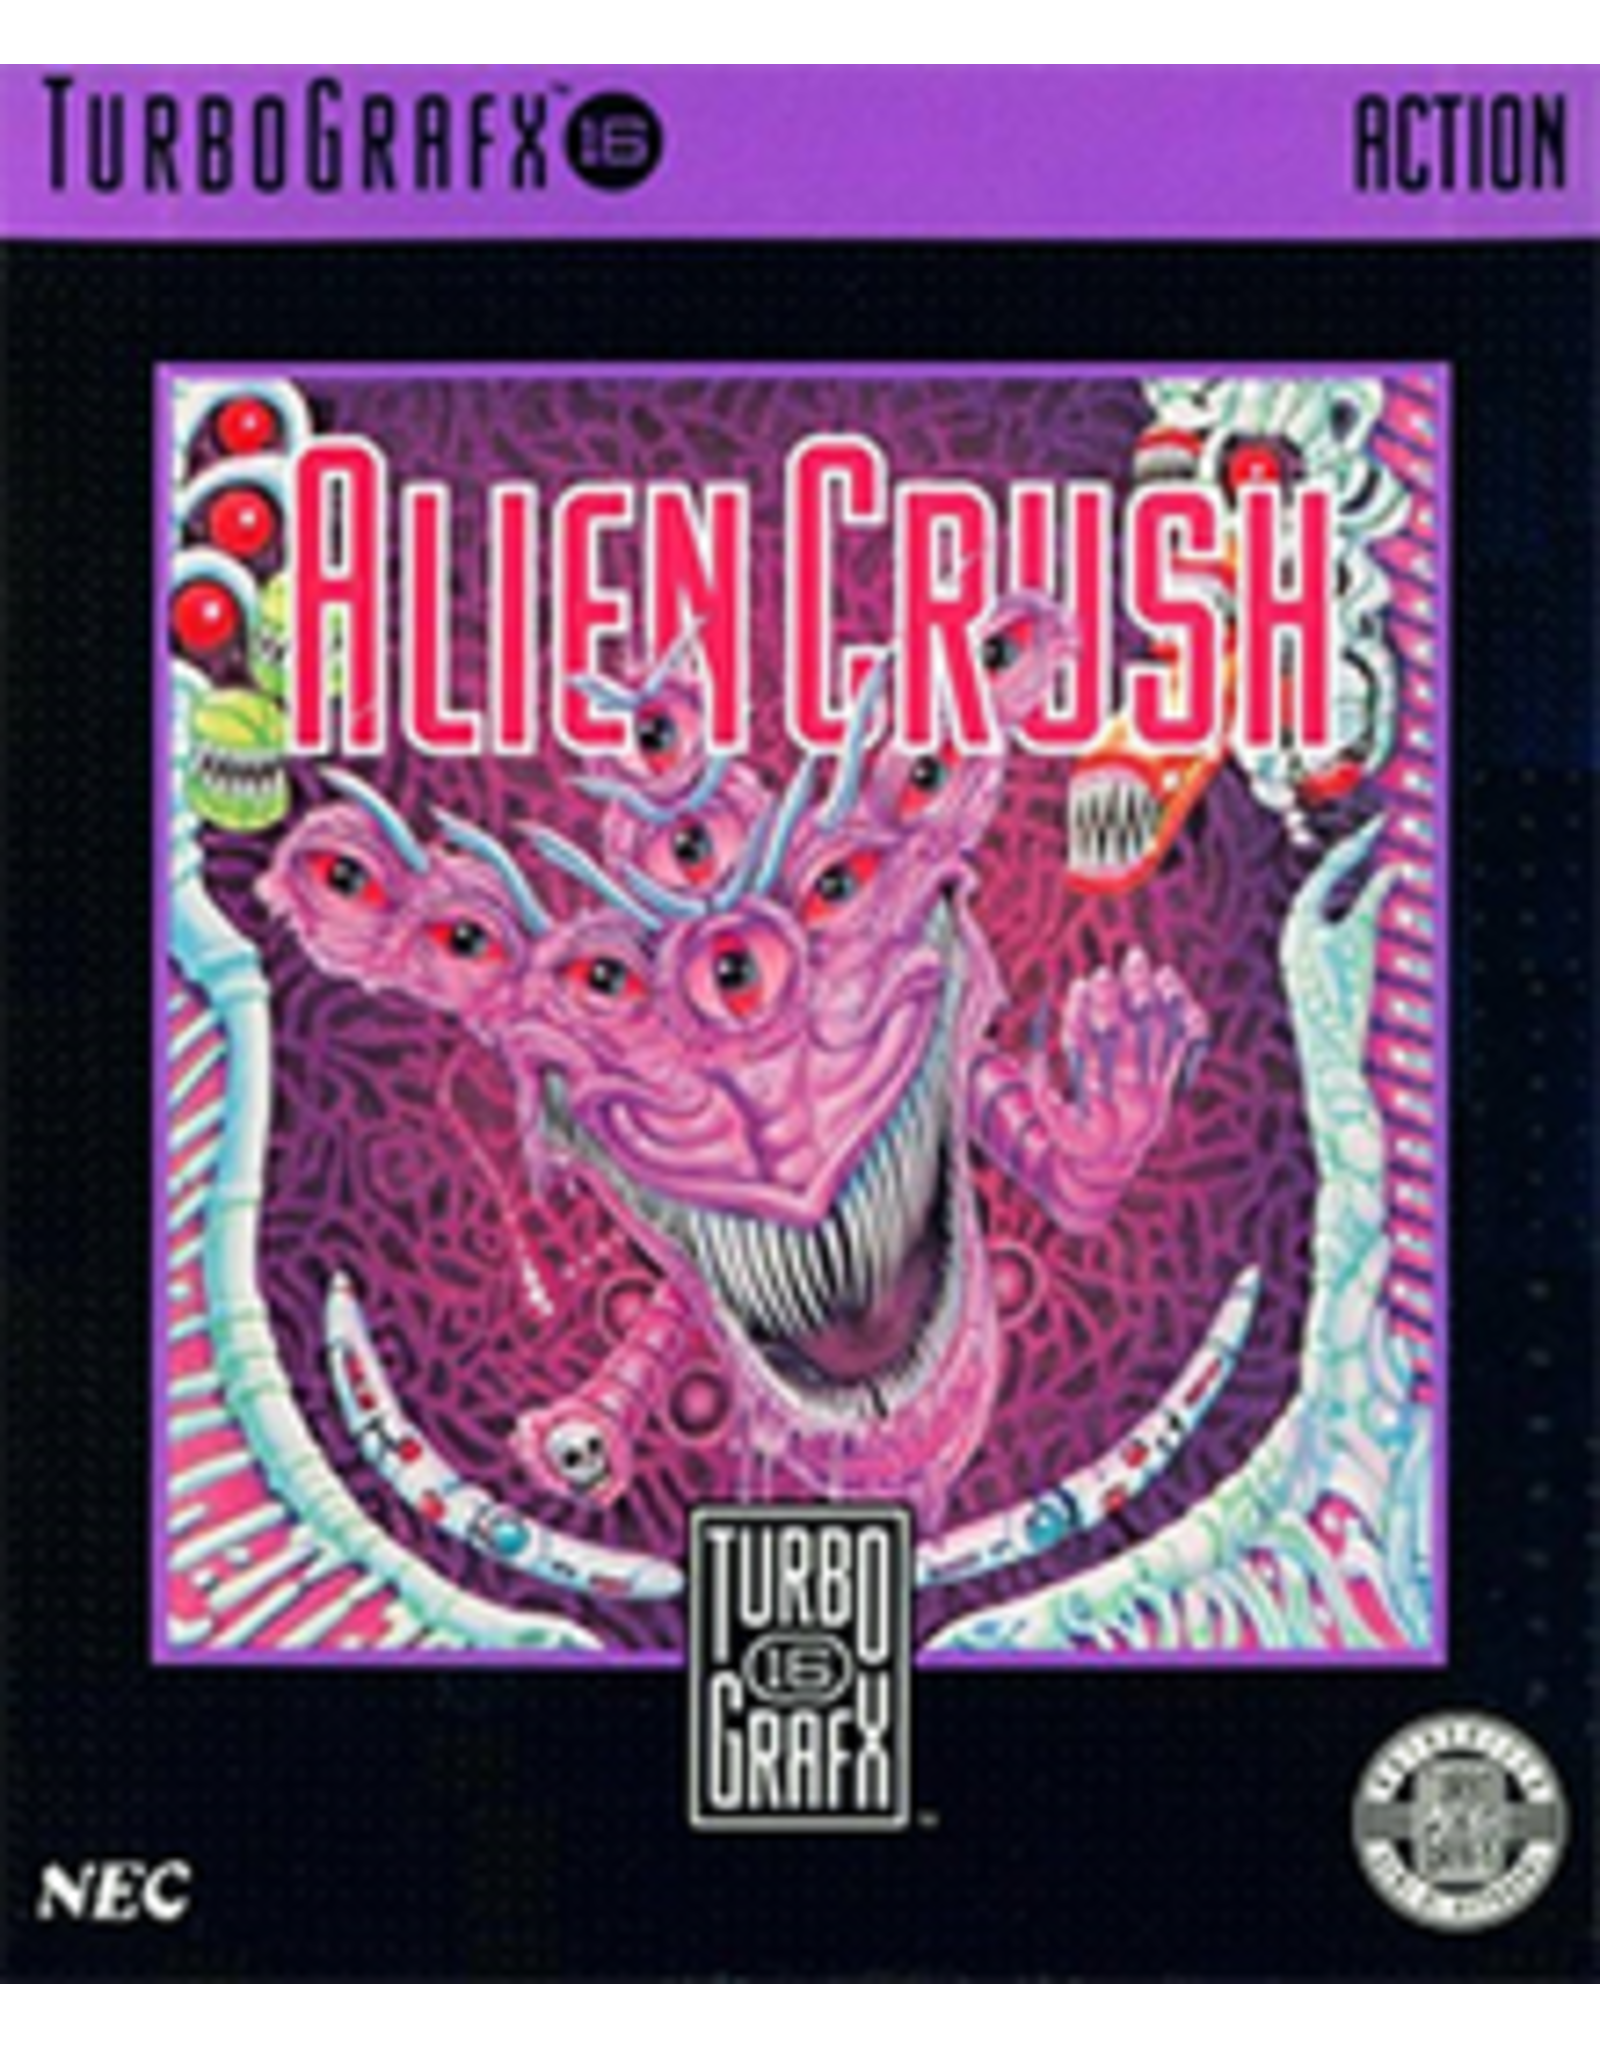 Turbografx 16 Alien Crush (Used, Cart Only)